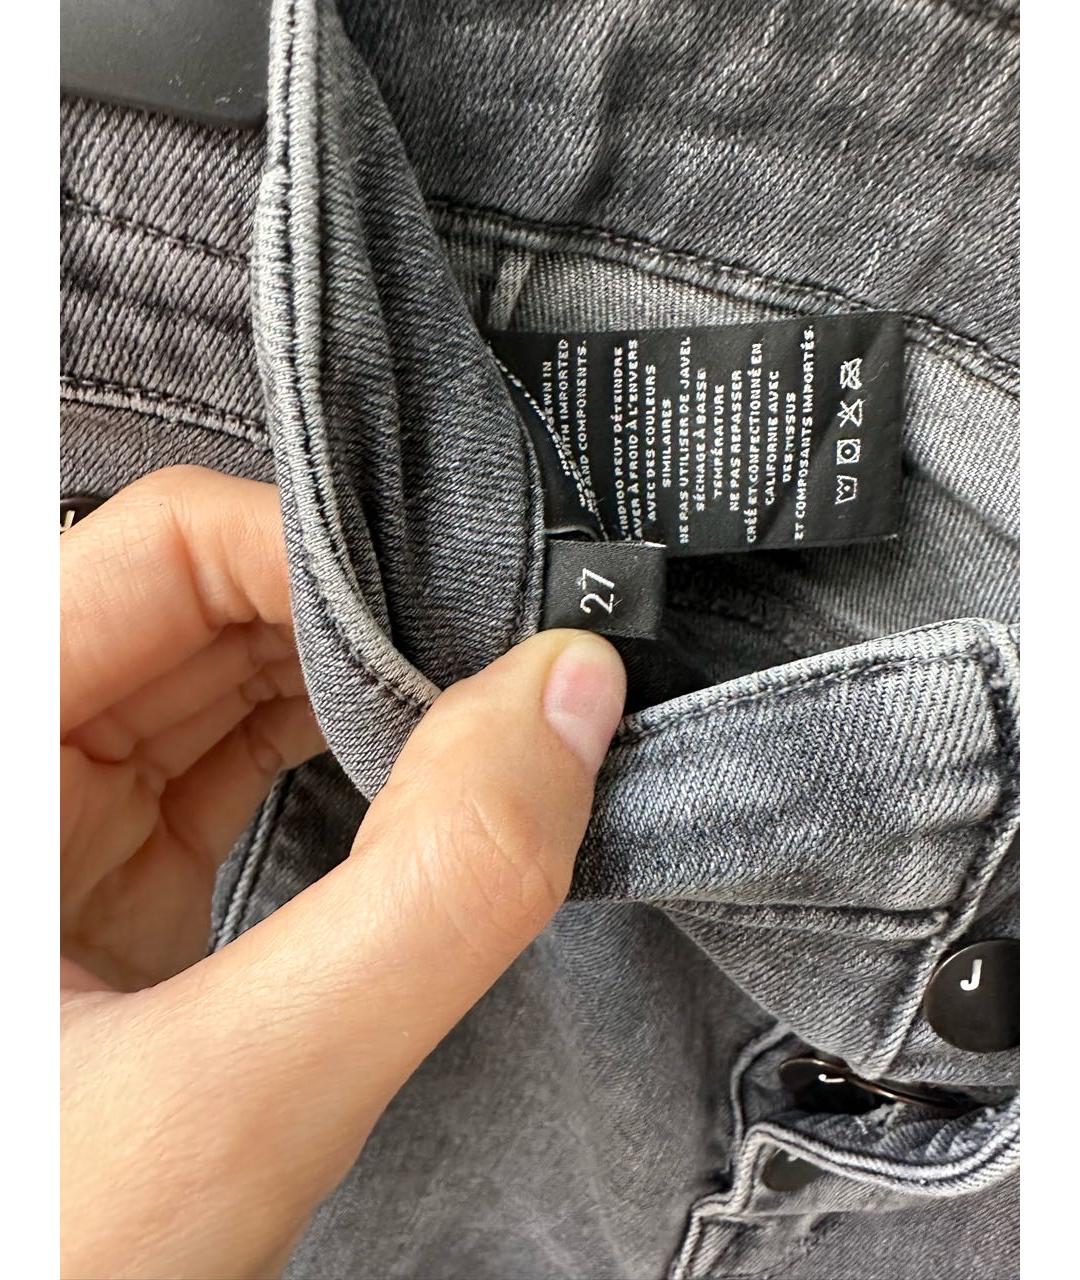 JBRAND Серые хлопко-эластановые джинсы слим, фото 5